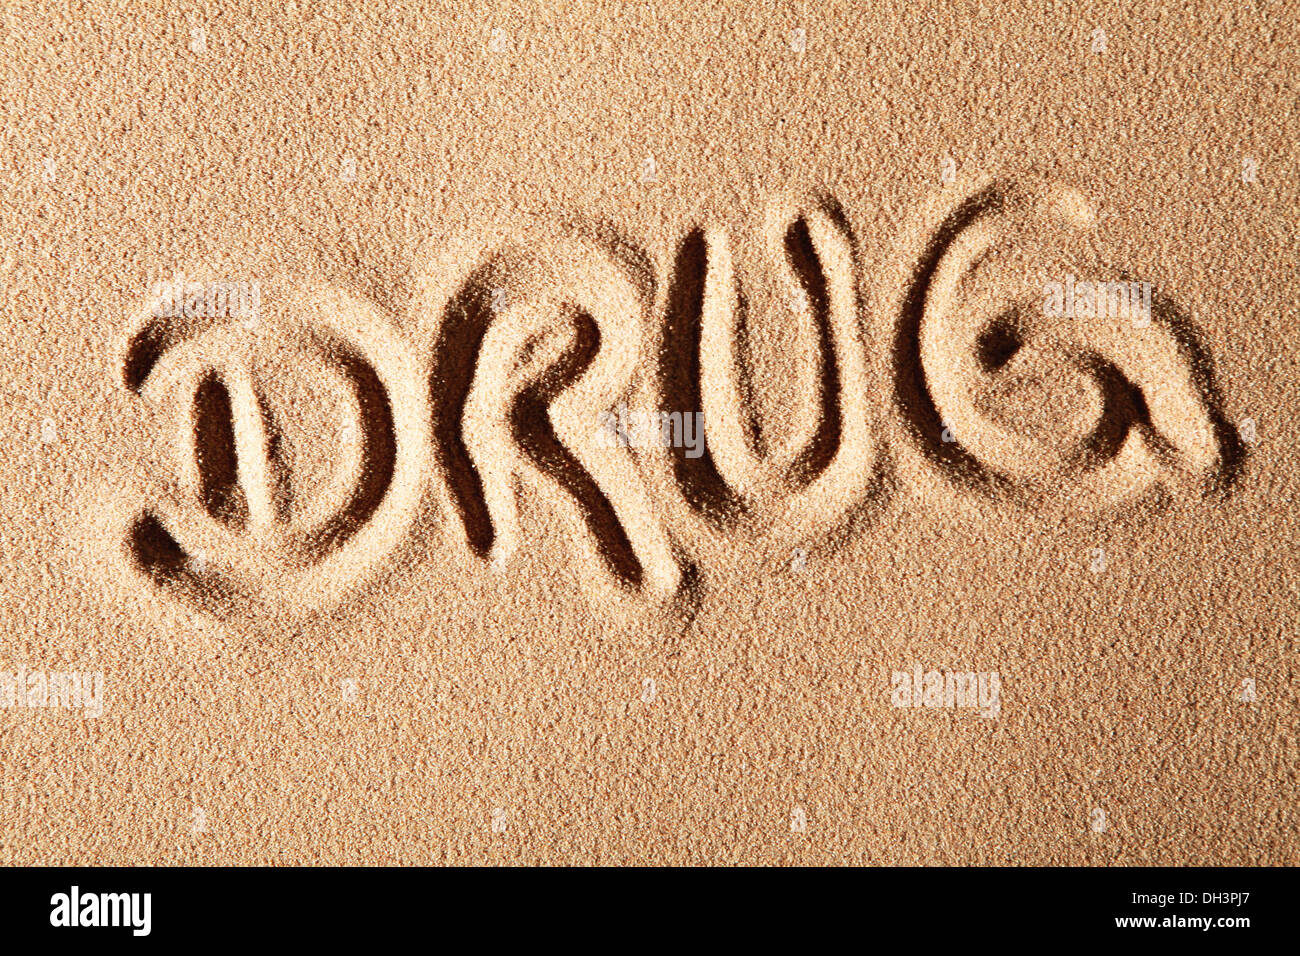 La parola farmaco, disegnato nella sabbia Foto Stock